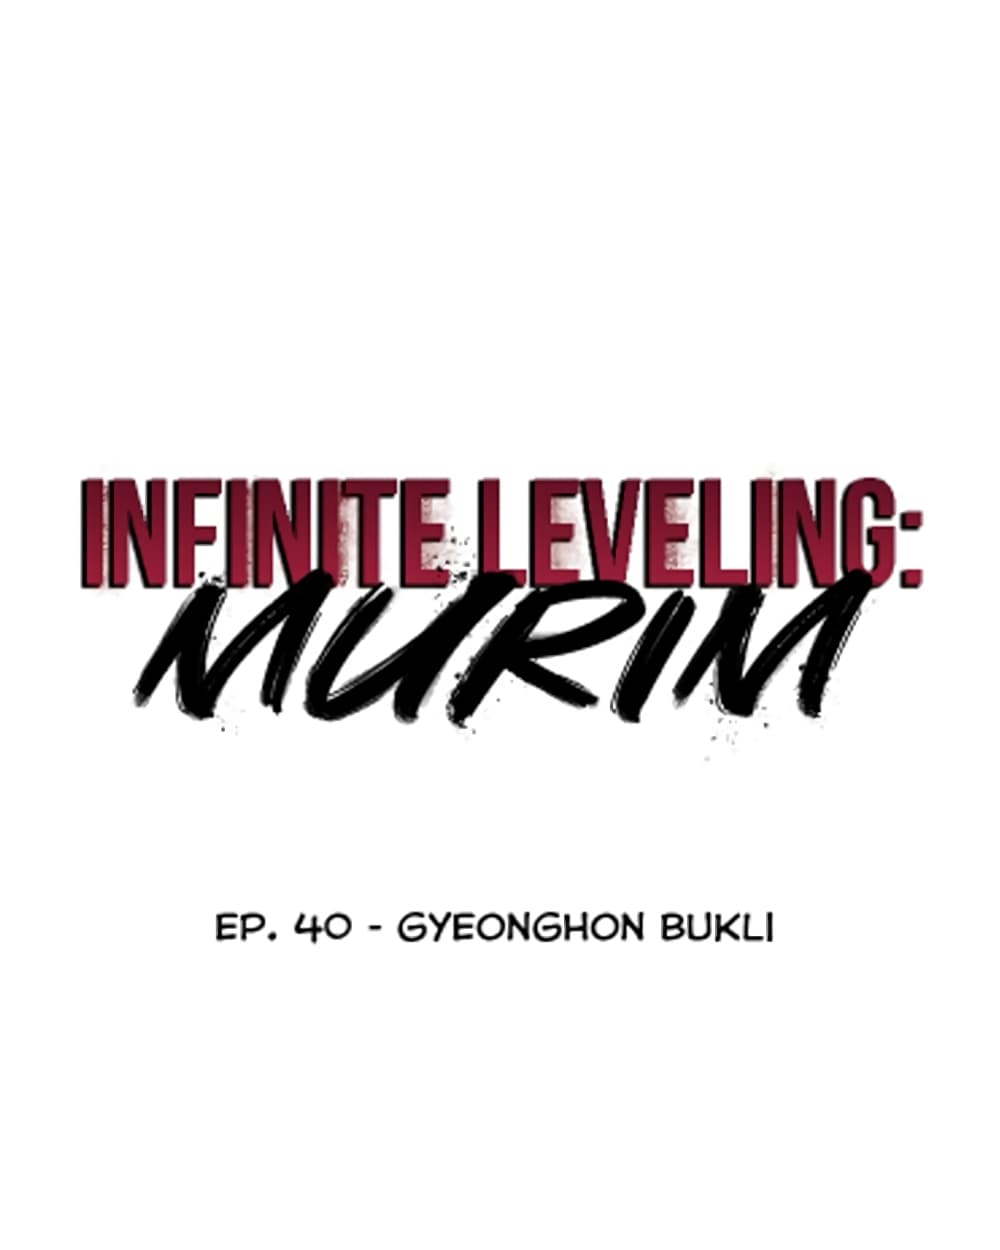 Infinite Level Up in Murim 40-40